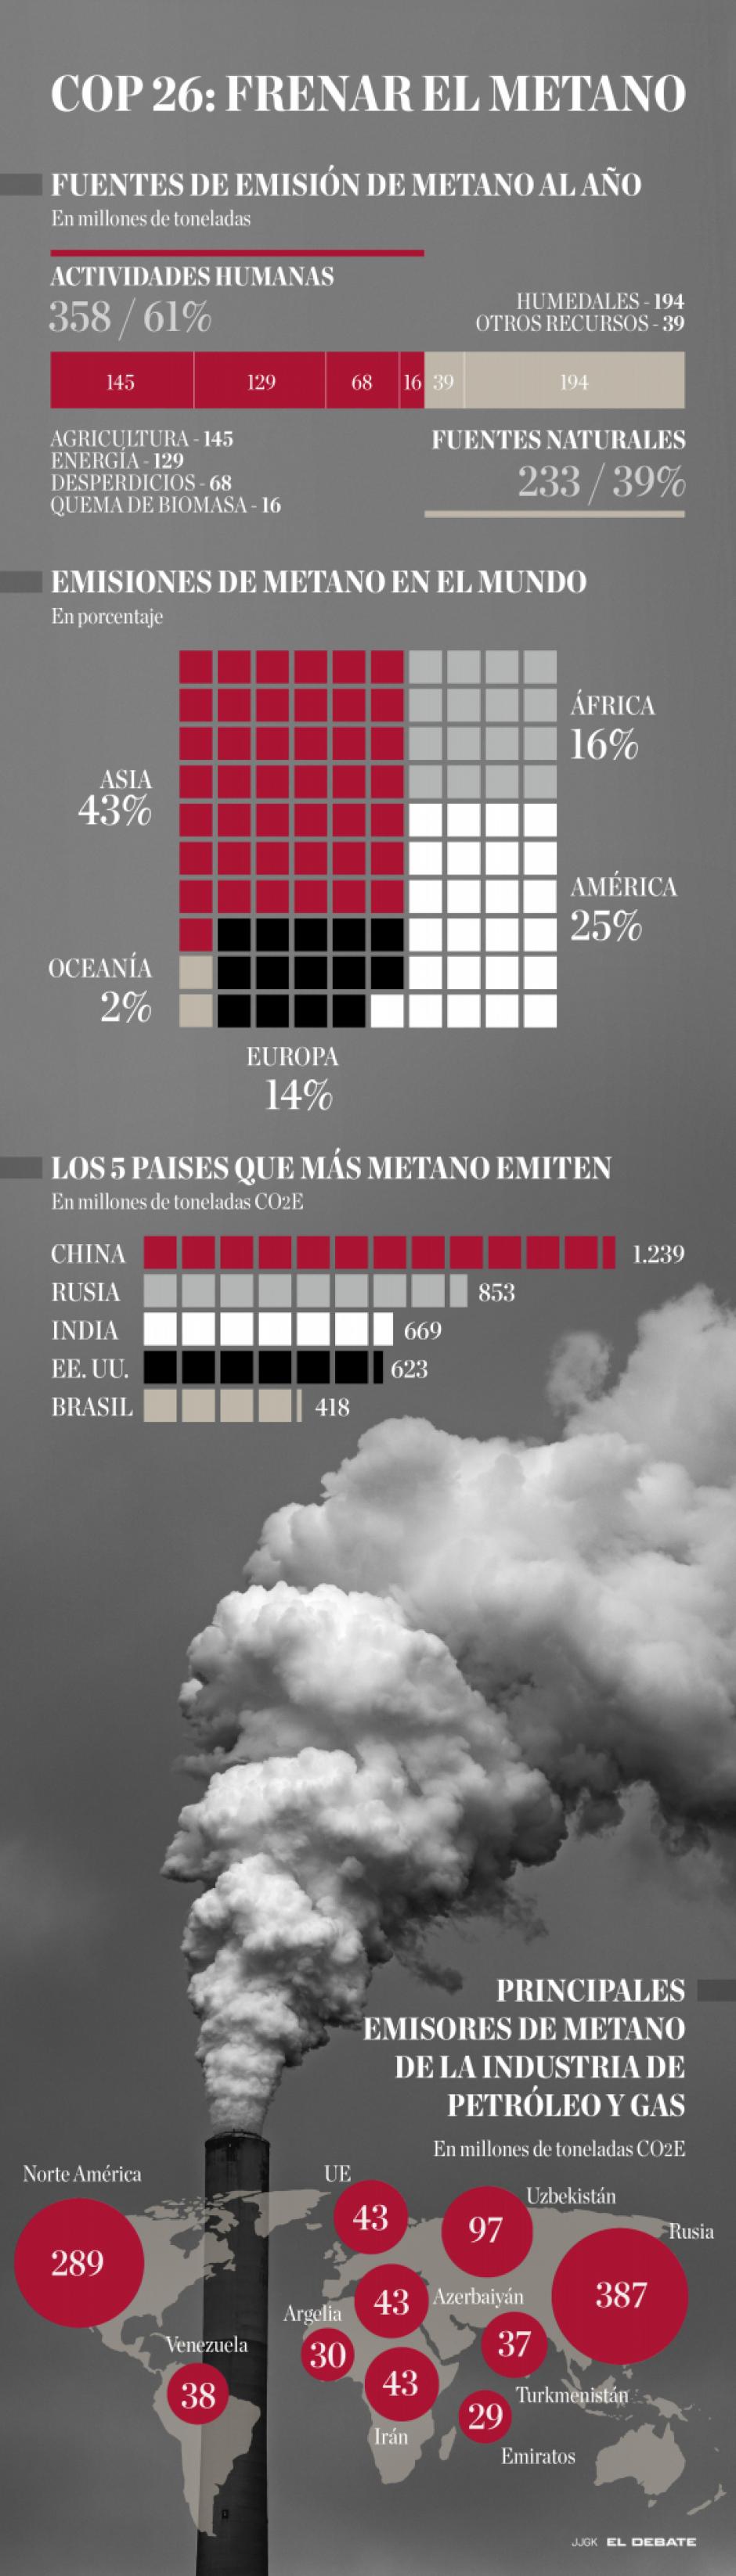 Infografía: emisiones de metano a nivel mundial